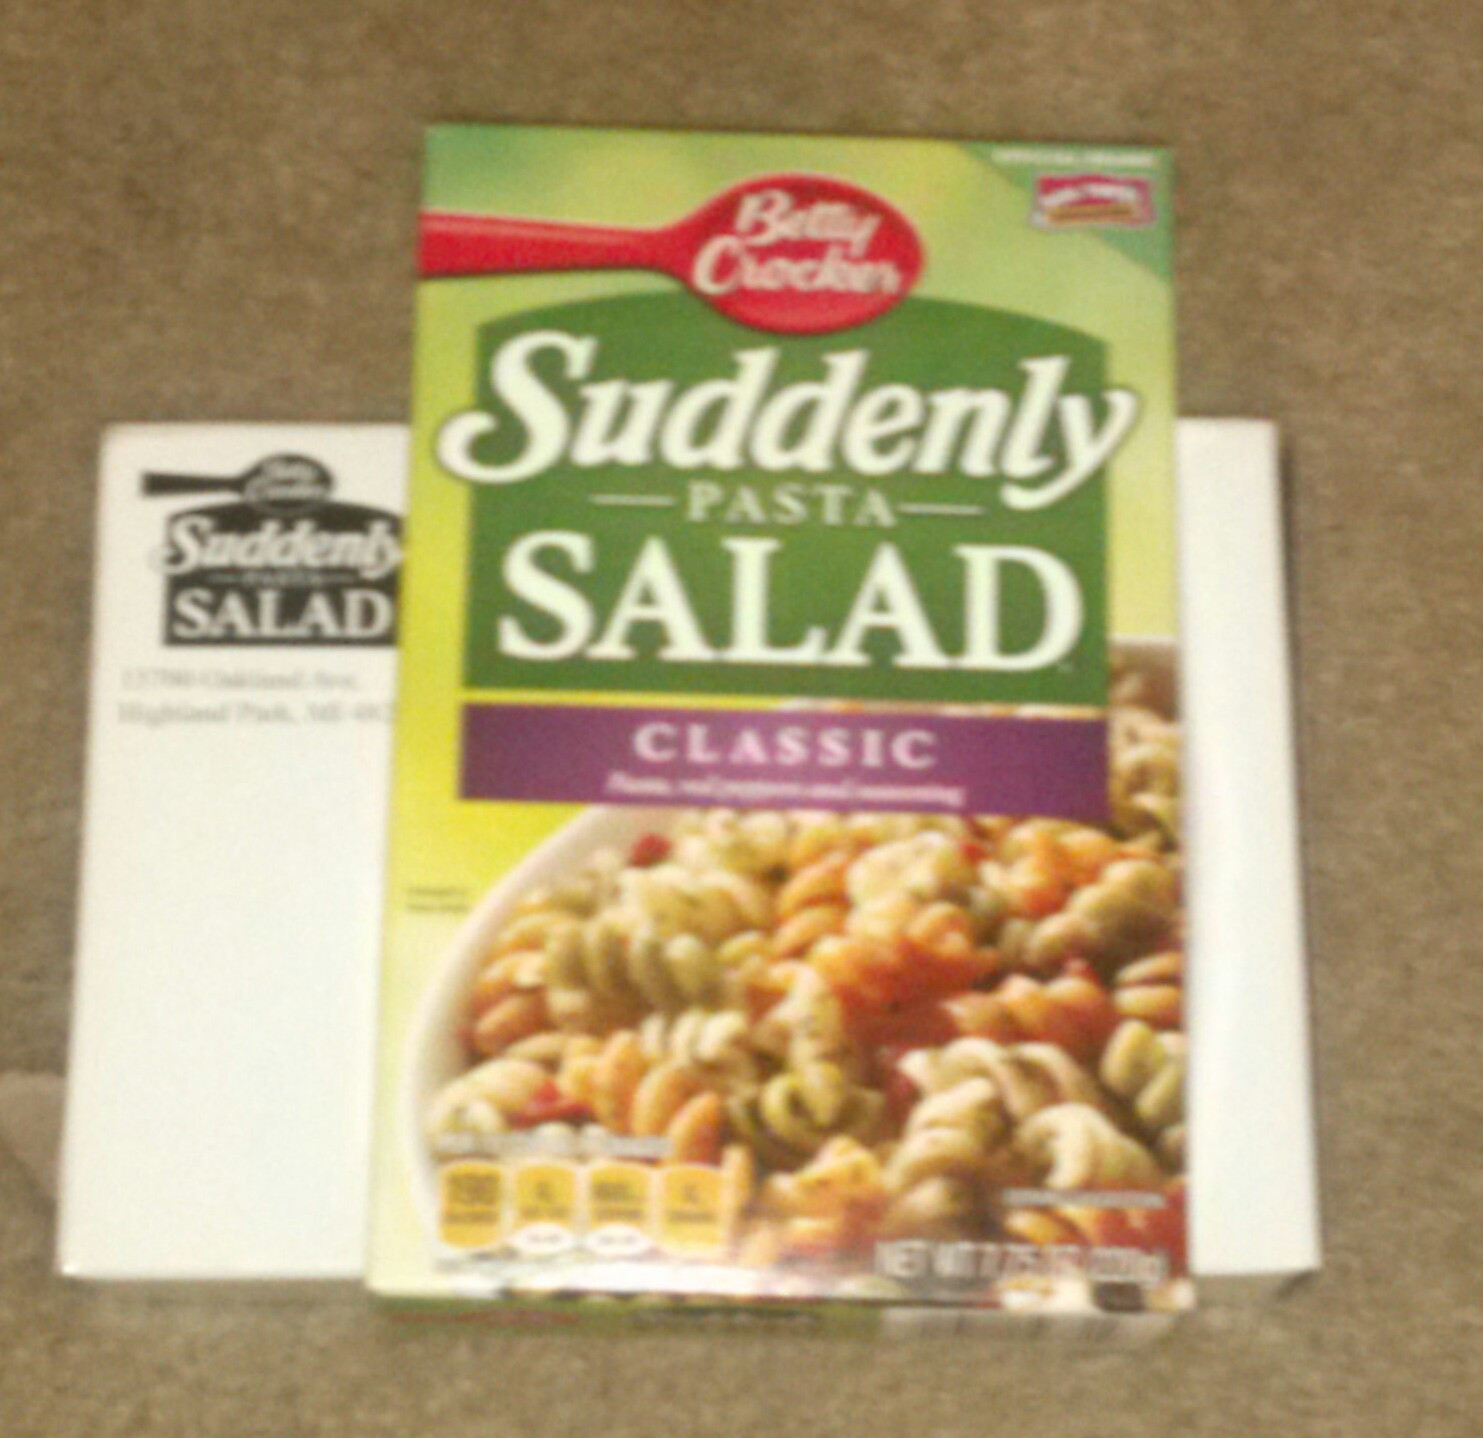 Suddenly Pasta Salad
 Free Suddenly pasta salad • Free Stuff Times What I Got